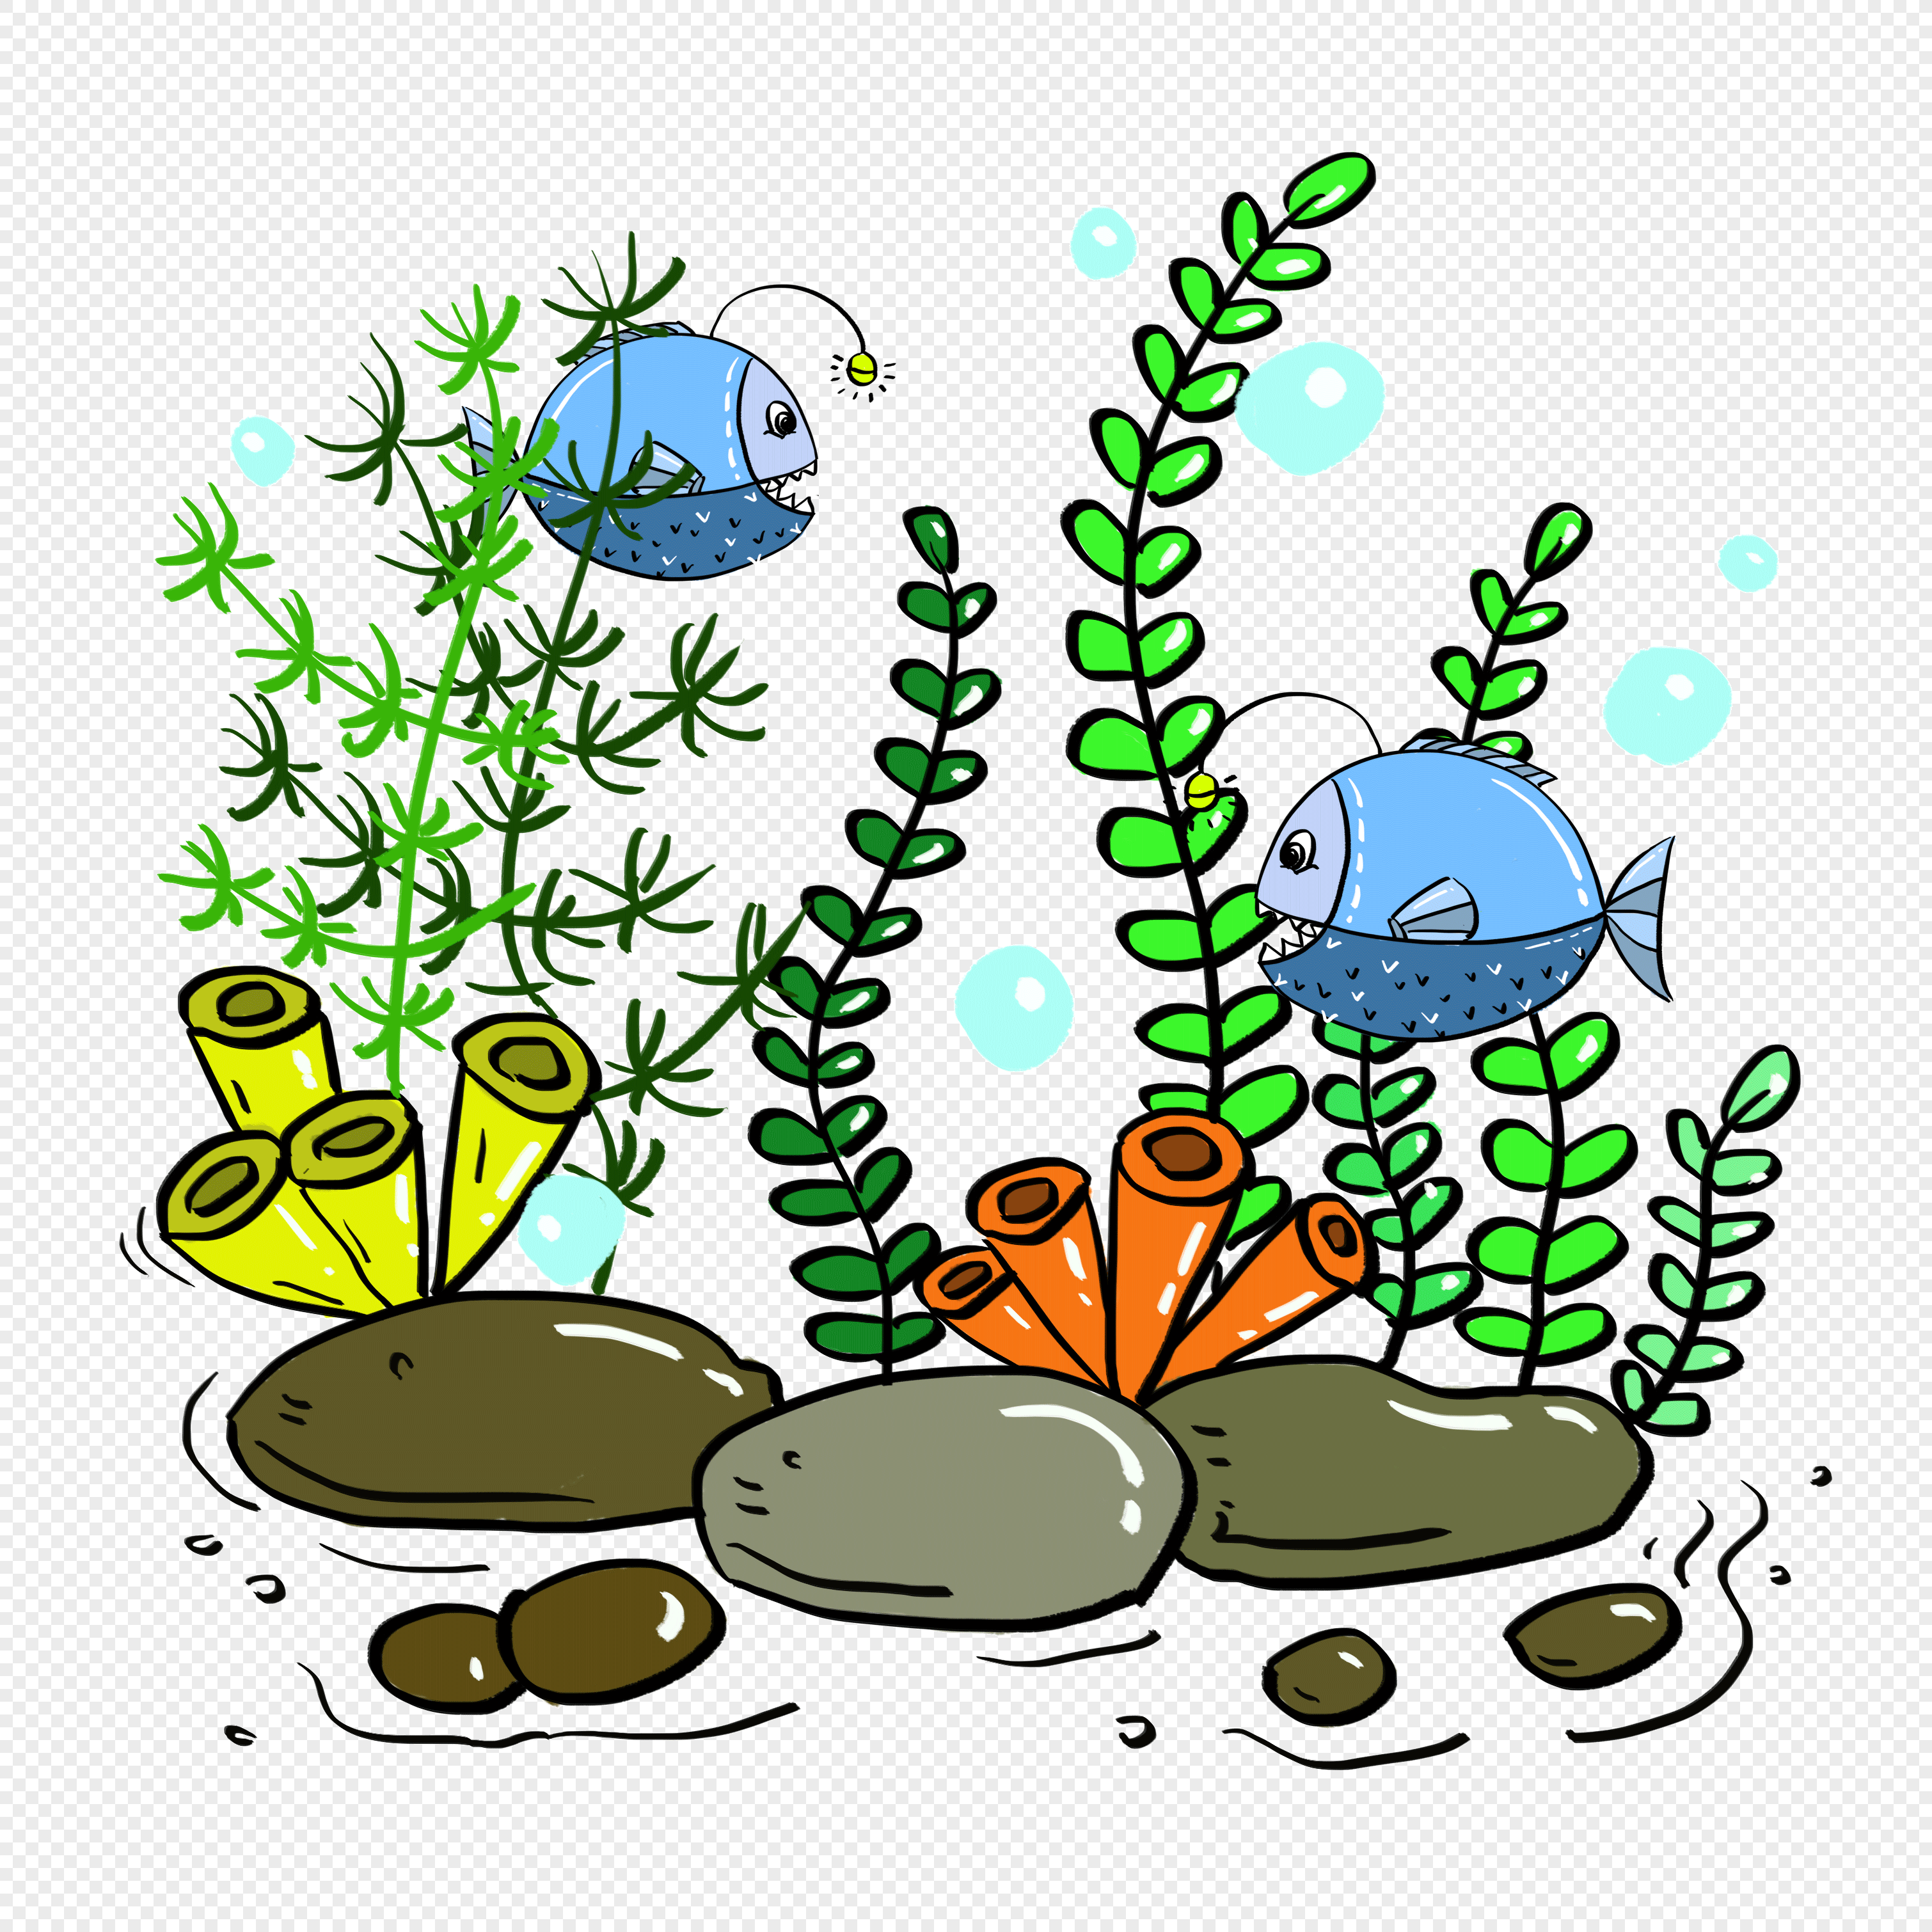  kartun  ikan laut dalam rumput air  bahan gratis gambar  